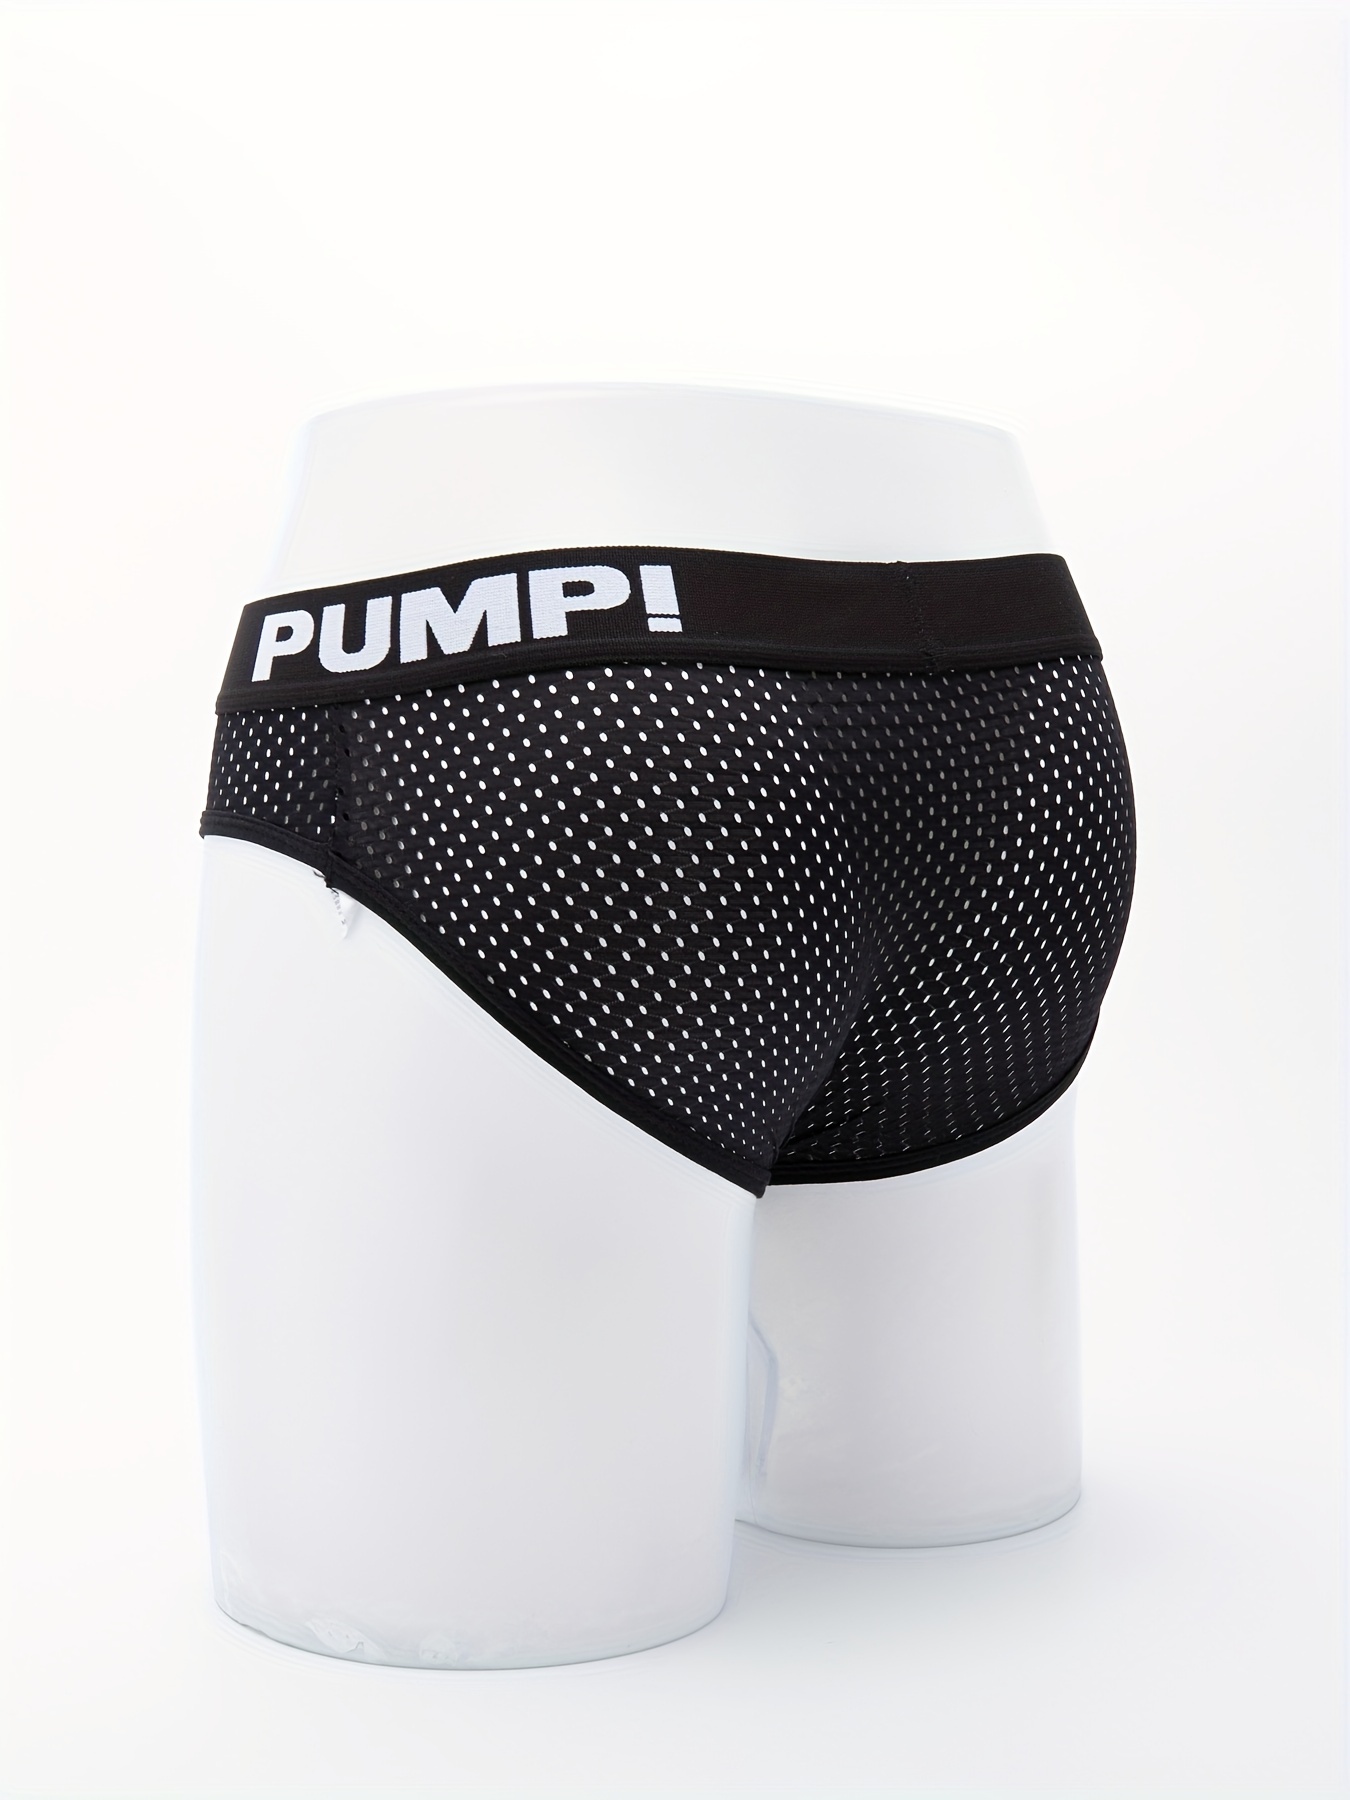 PUMP! Mens Underwear